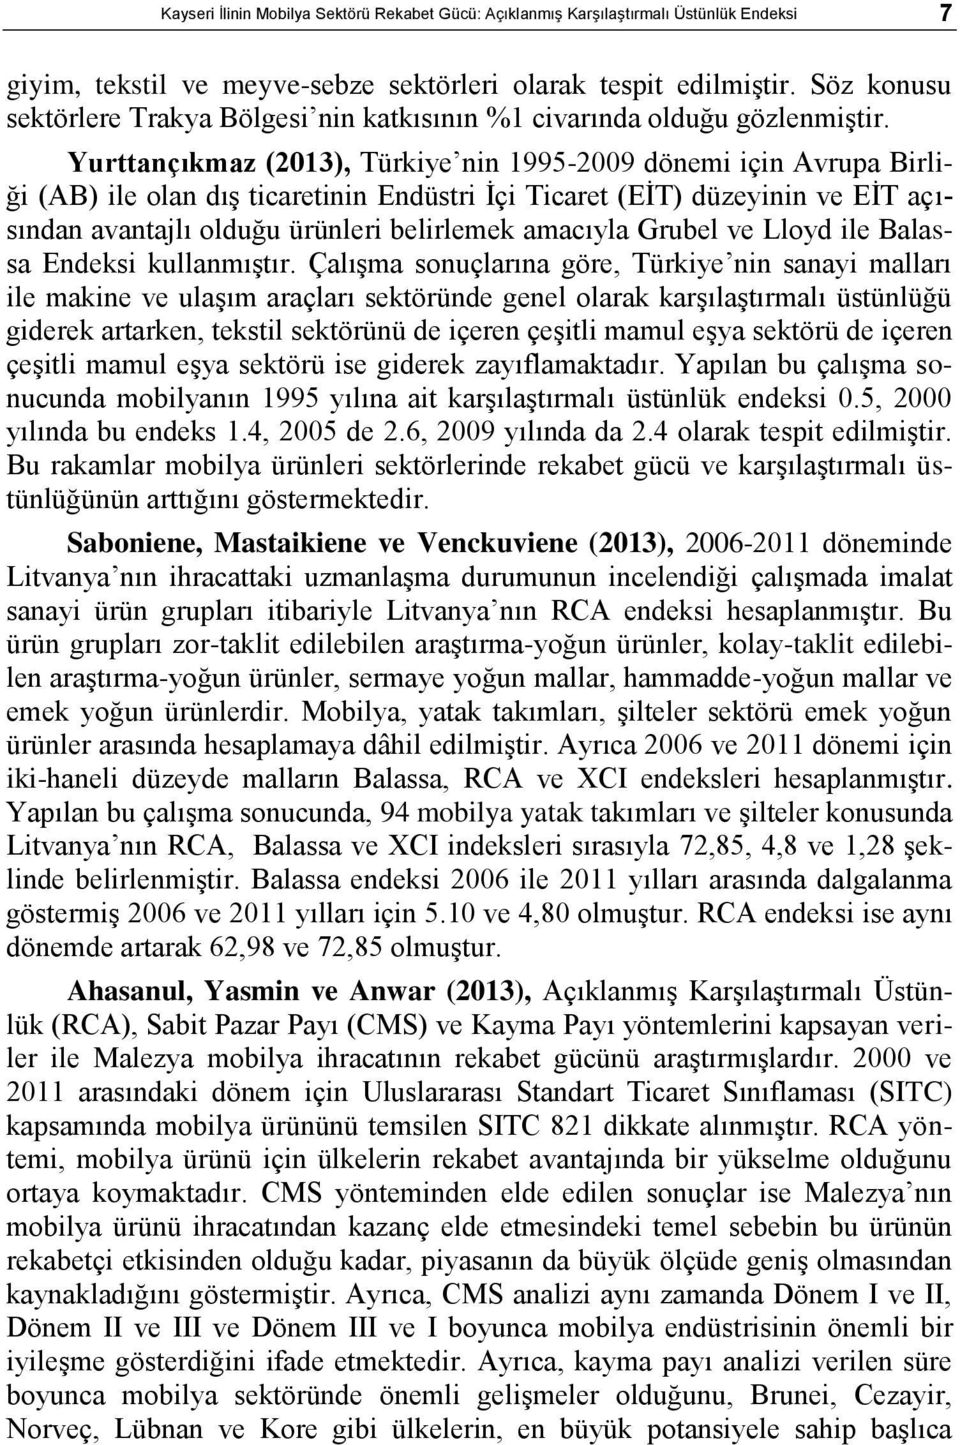 Yurttançıkmaz (2013), Türkiye nin 1995-2009 dönemi için Avrupa Birliği (AB) ile olan dıģ ticaretinin Endüstri Ġçi Ticaret (EĠT) düzeyinin ve EĠT açısından avantajlı olduğu ürünleri belirlemek